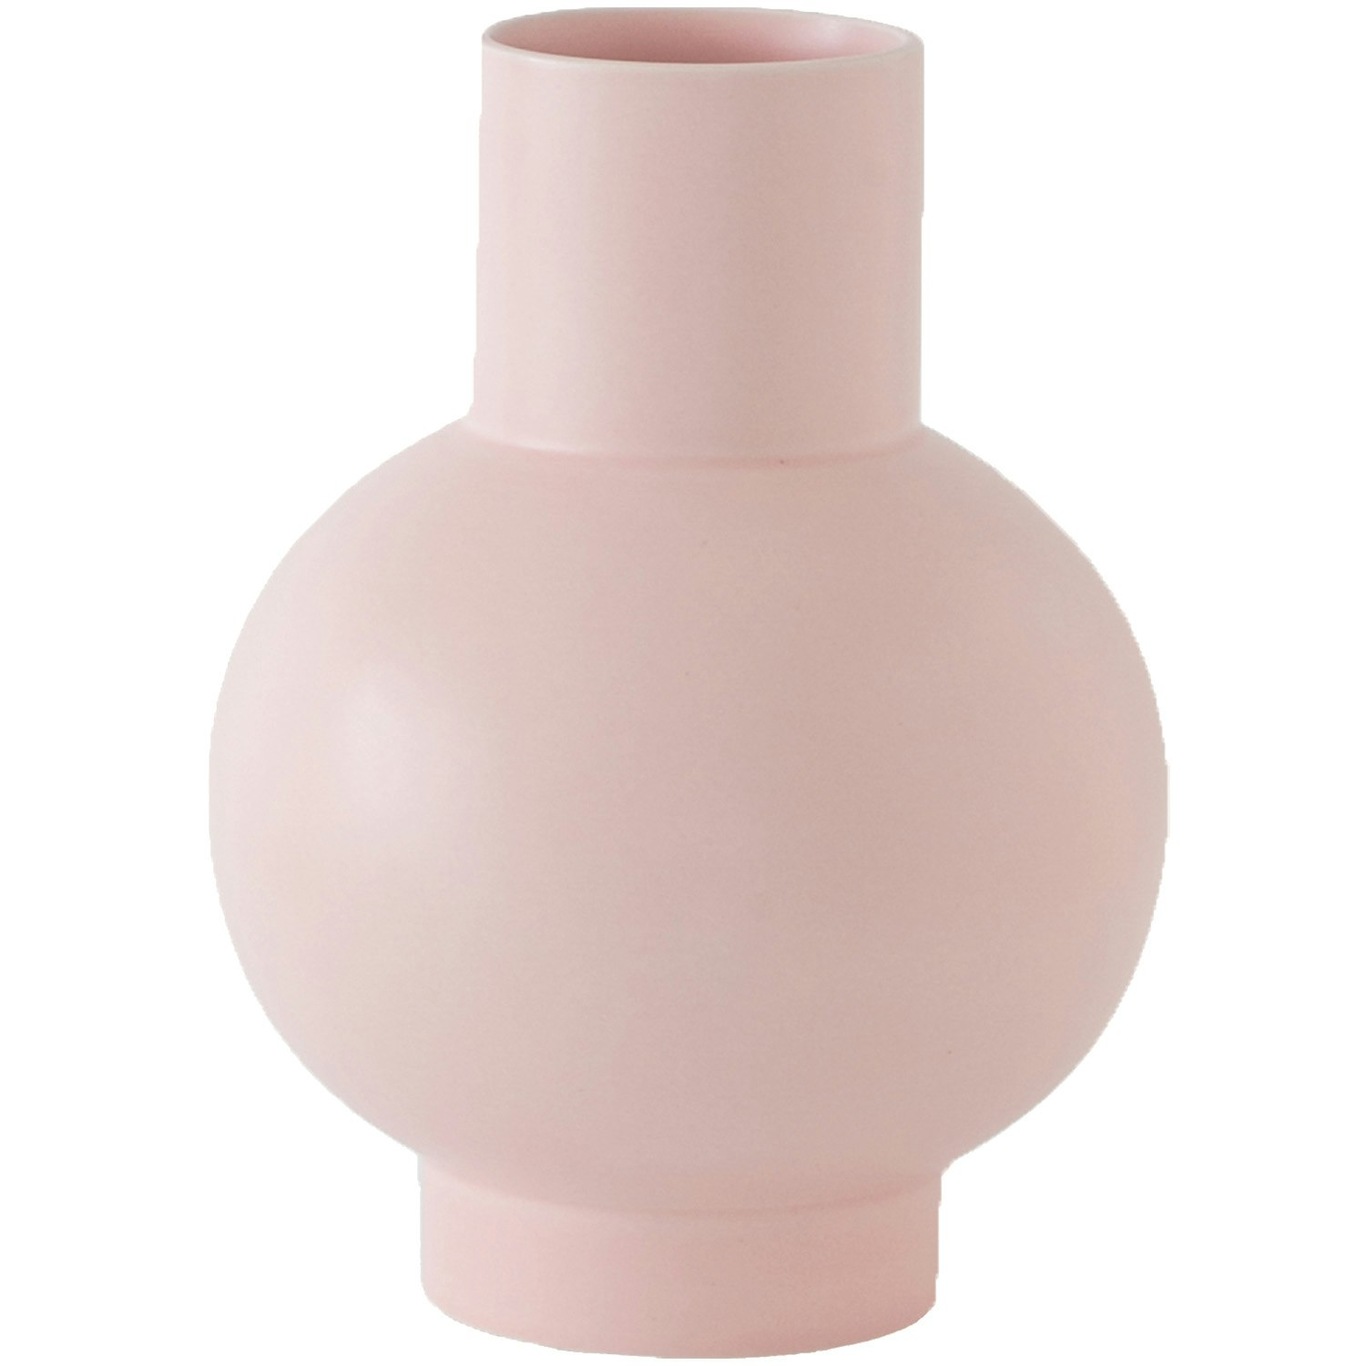 Strøm Vase 24 cm, Coral Blush